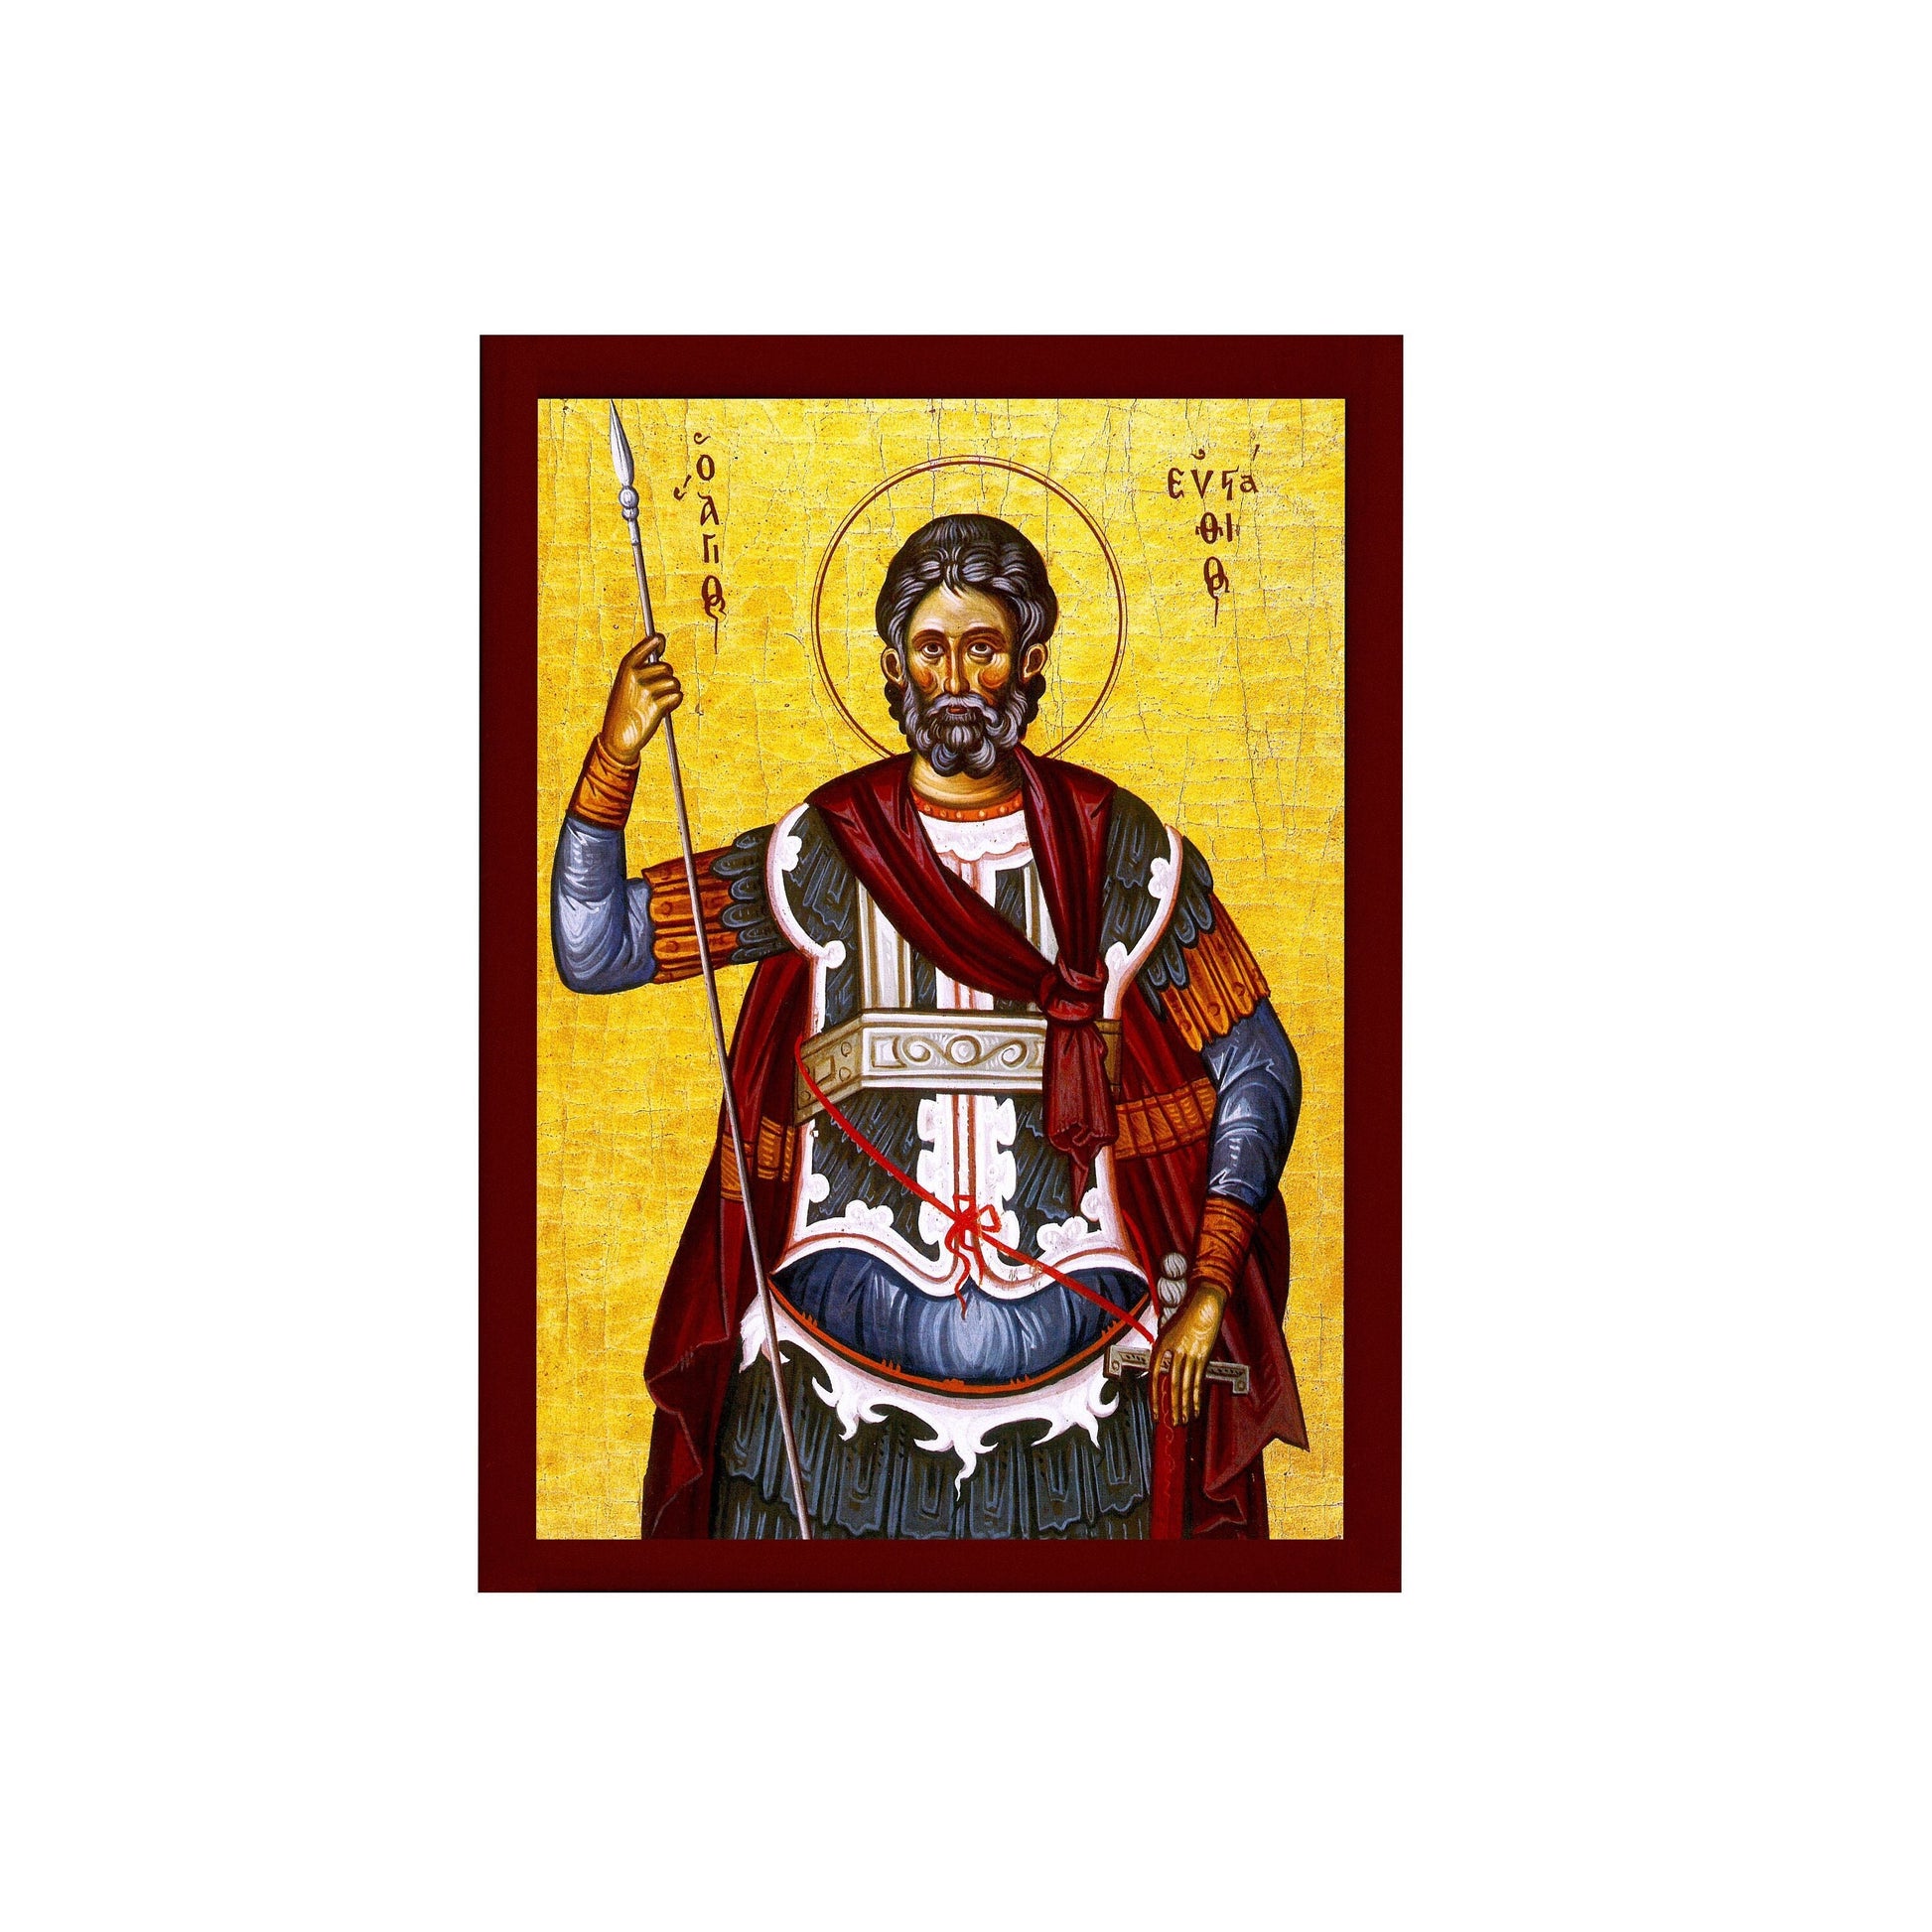 Saint Eustathius icon, Handmade Greek Orthodox icon of St Eustace, Byzantine art wall hanging icon wood plaque, religious decor TheHolyArt